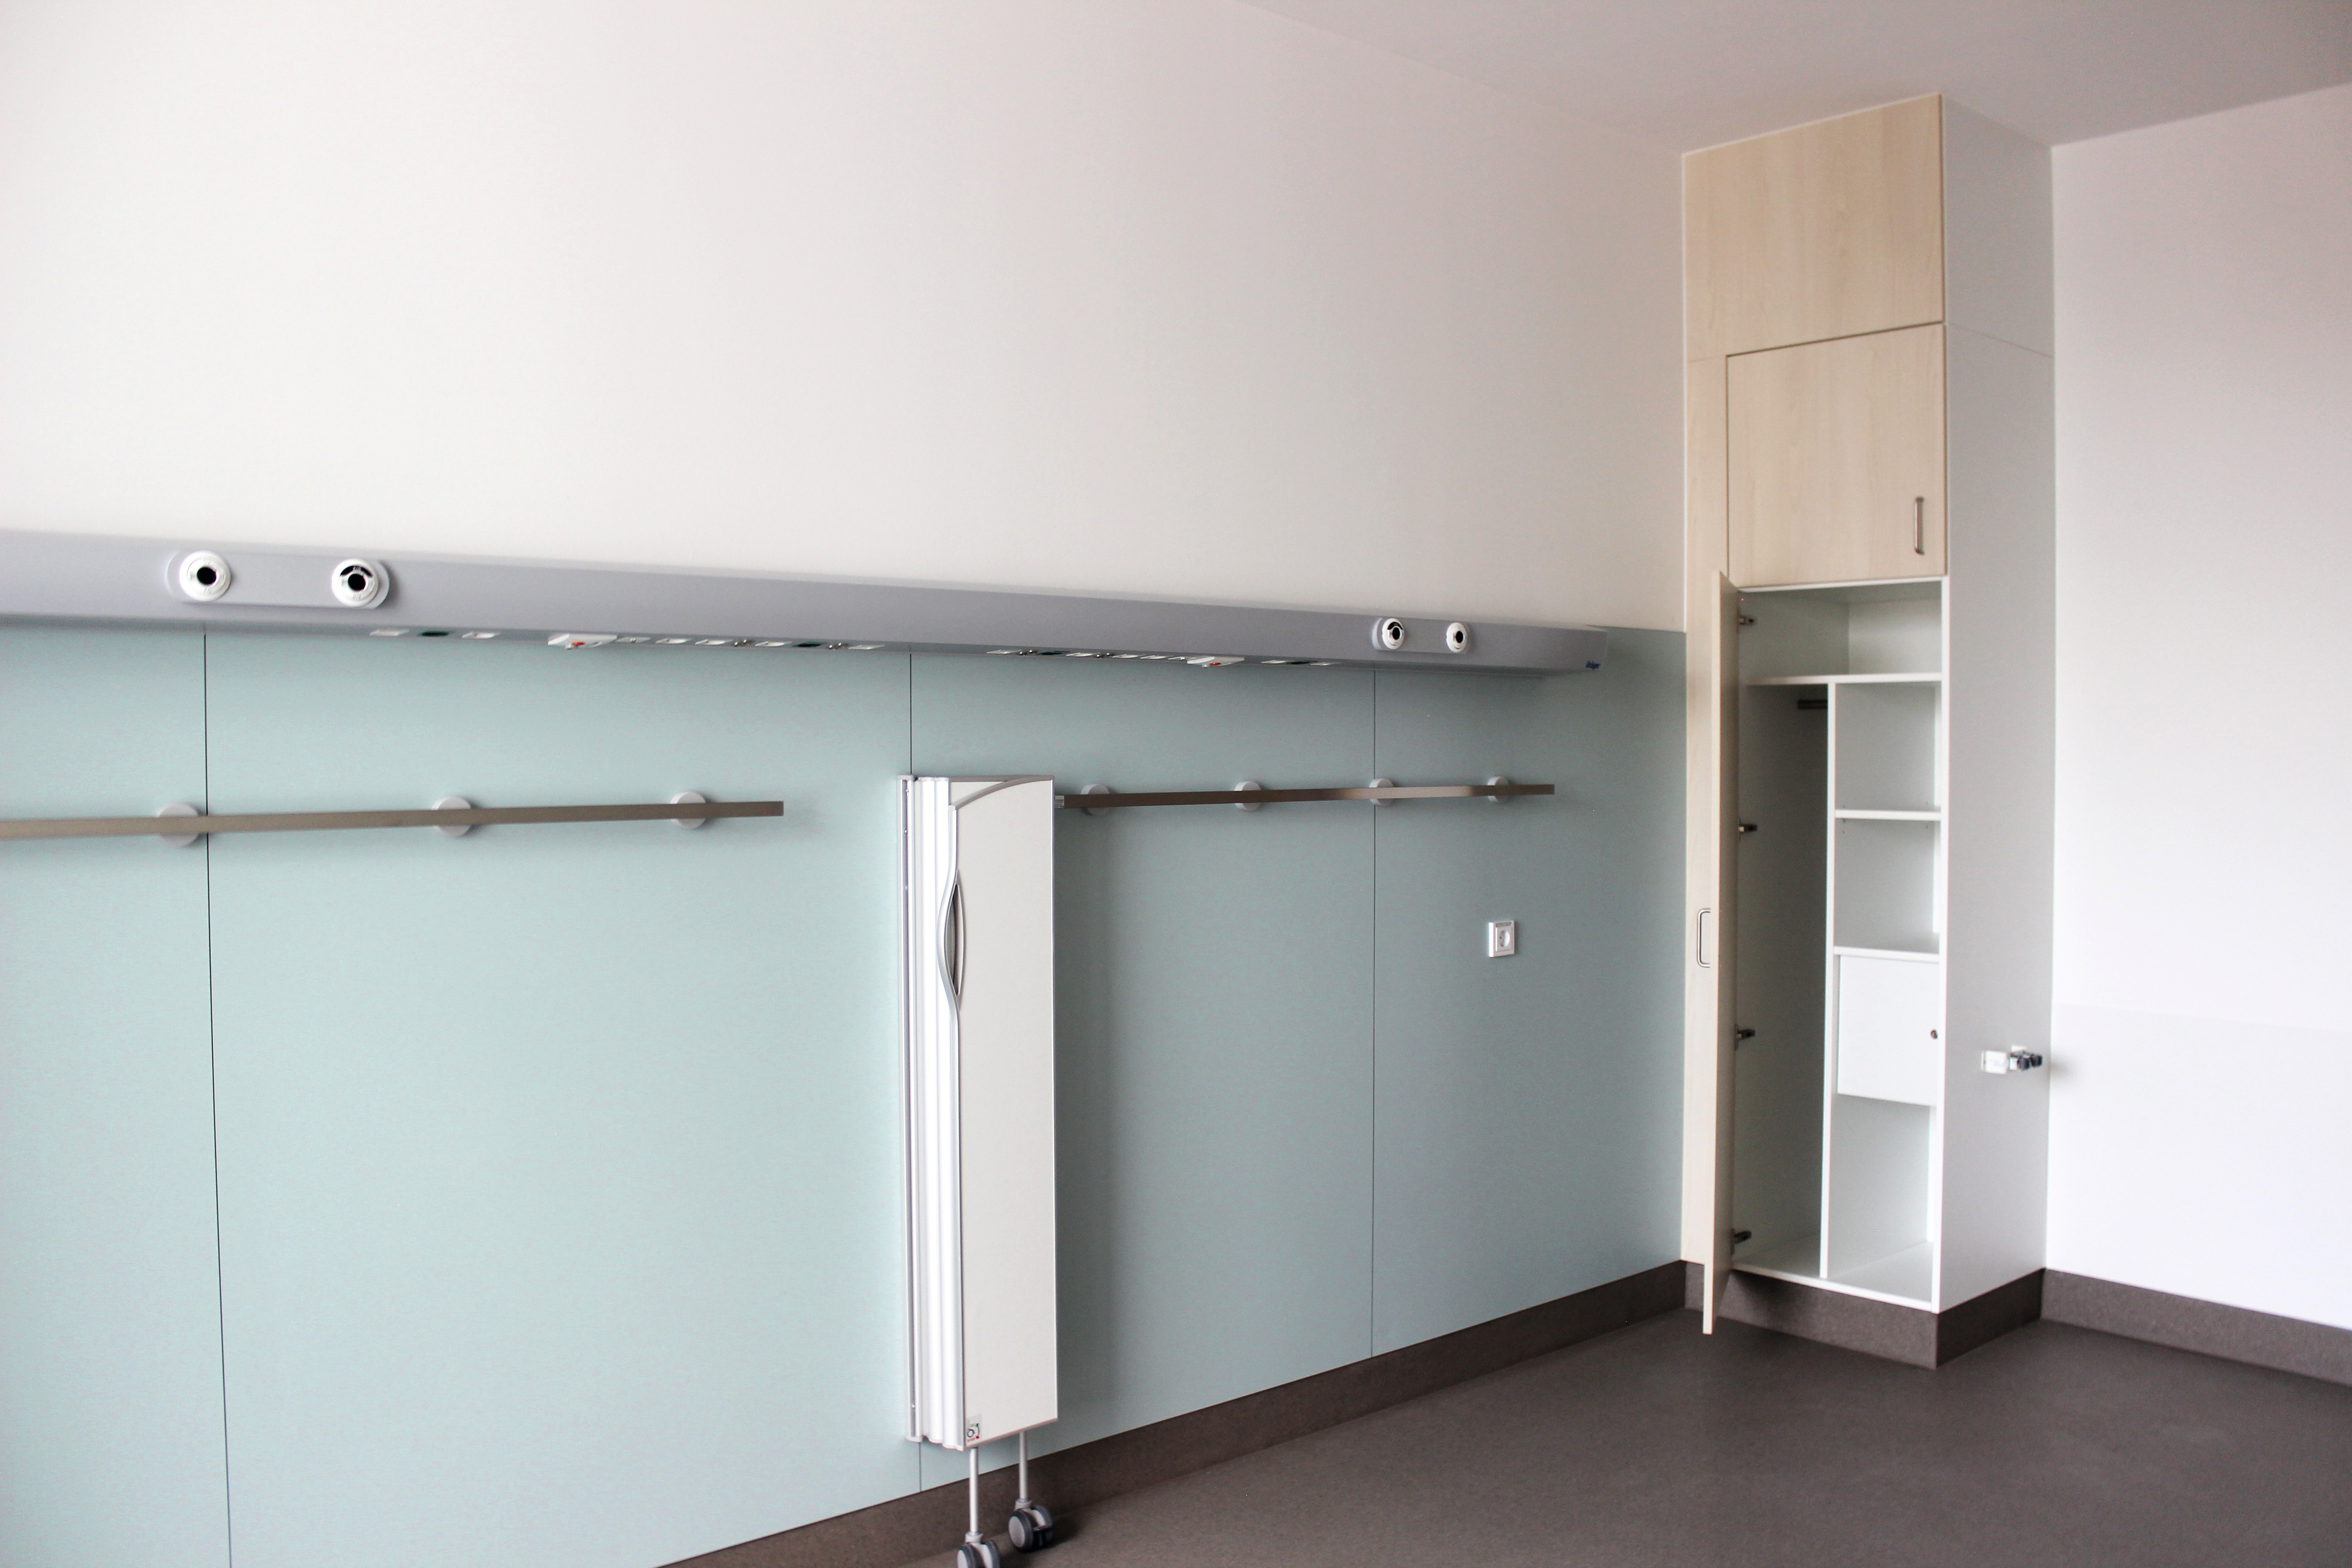 Les armoires destinées aux patients sont constituées d'éléments de meuble avec le système Clic moderne. © University Hospital Schleswig-Holstein